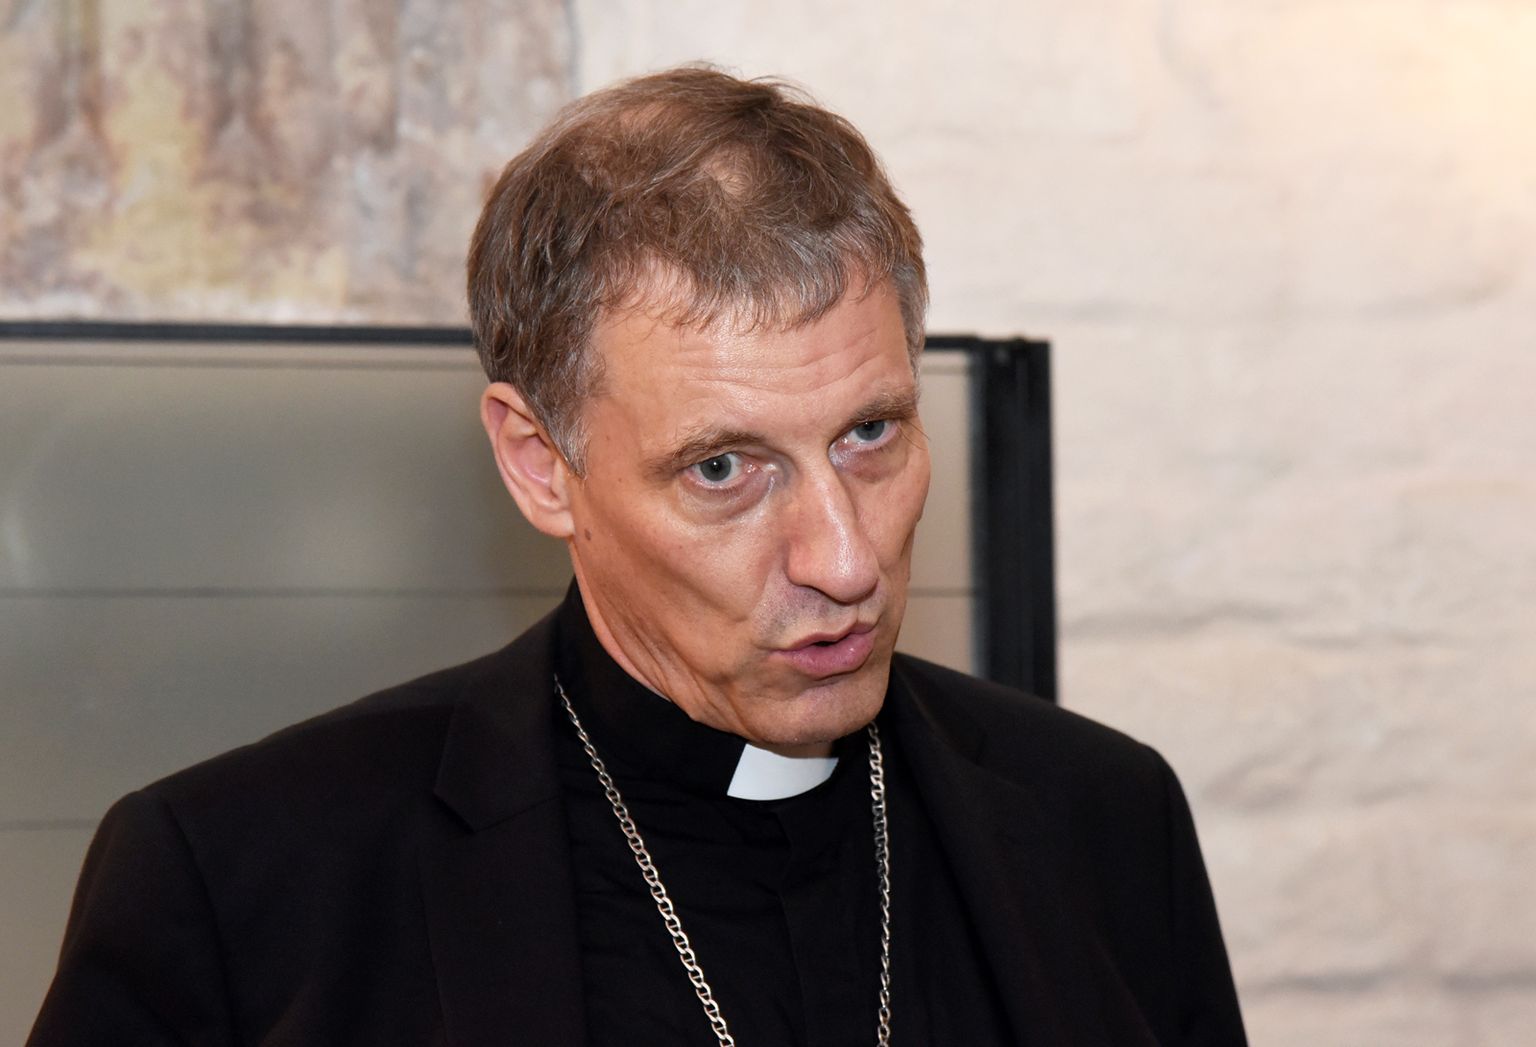 Katoļu baznīcas Rīgas arhibīskaps metropolīts Zbigņevs Stankevičs